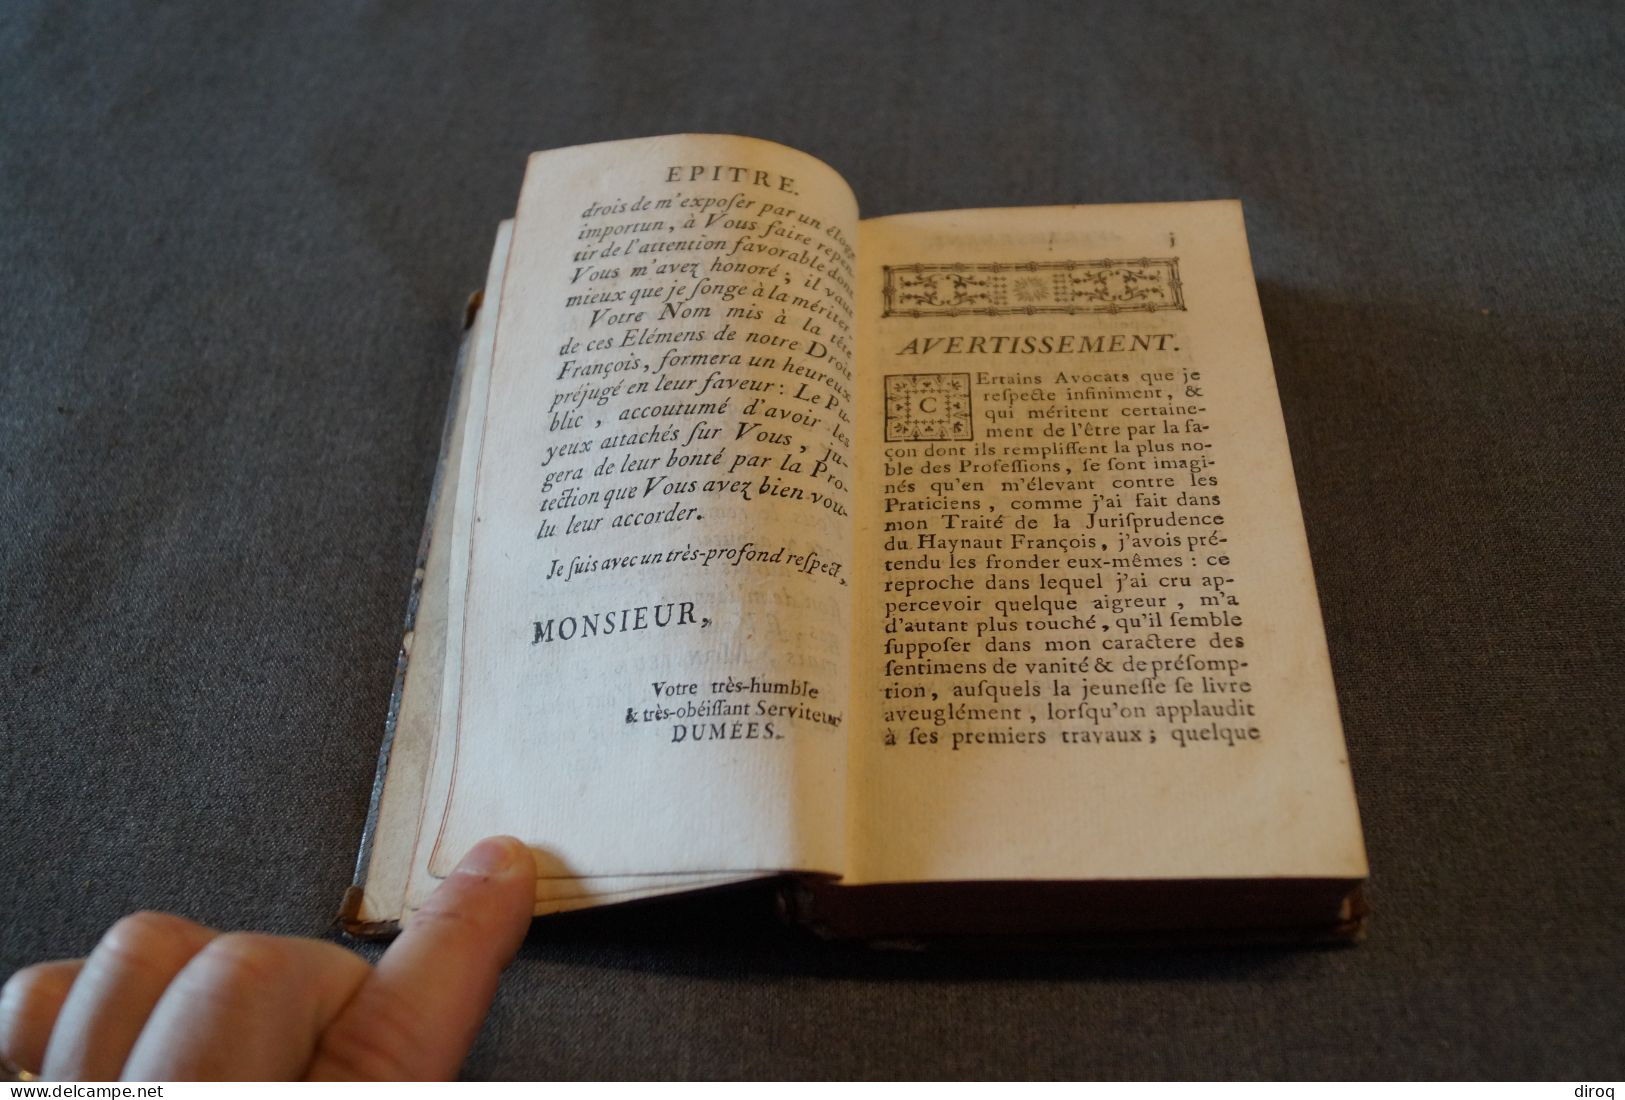 RARE,1753,Histoire Et éléments Droit François,444 Pages + Table,17 Cm./10 Cm. - 1701-1800